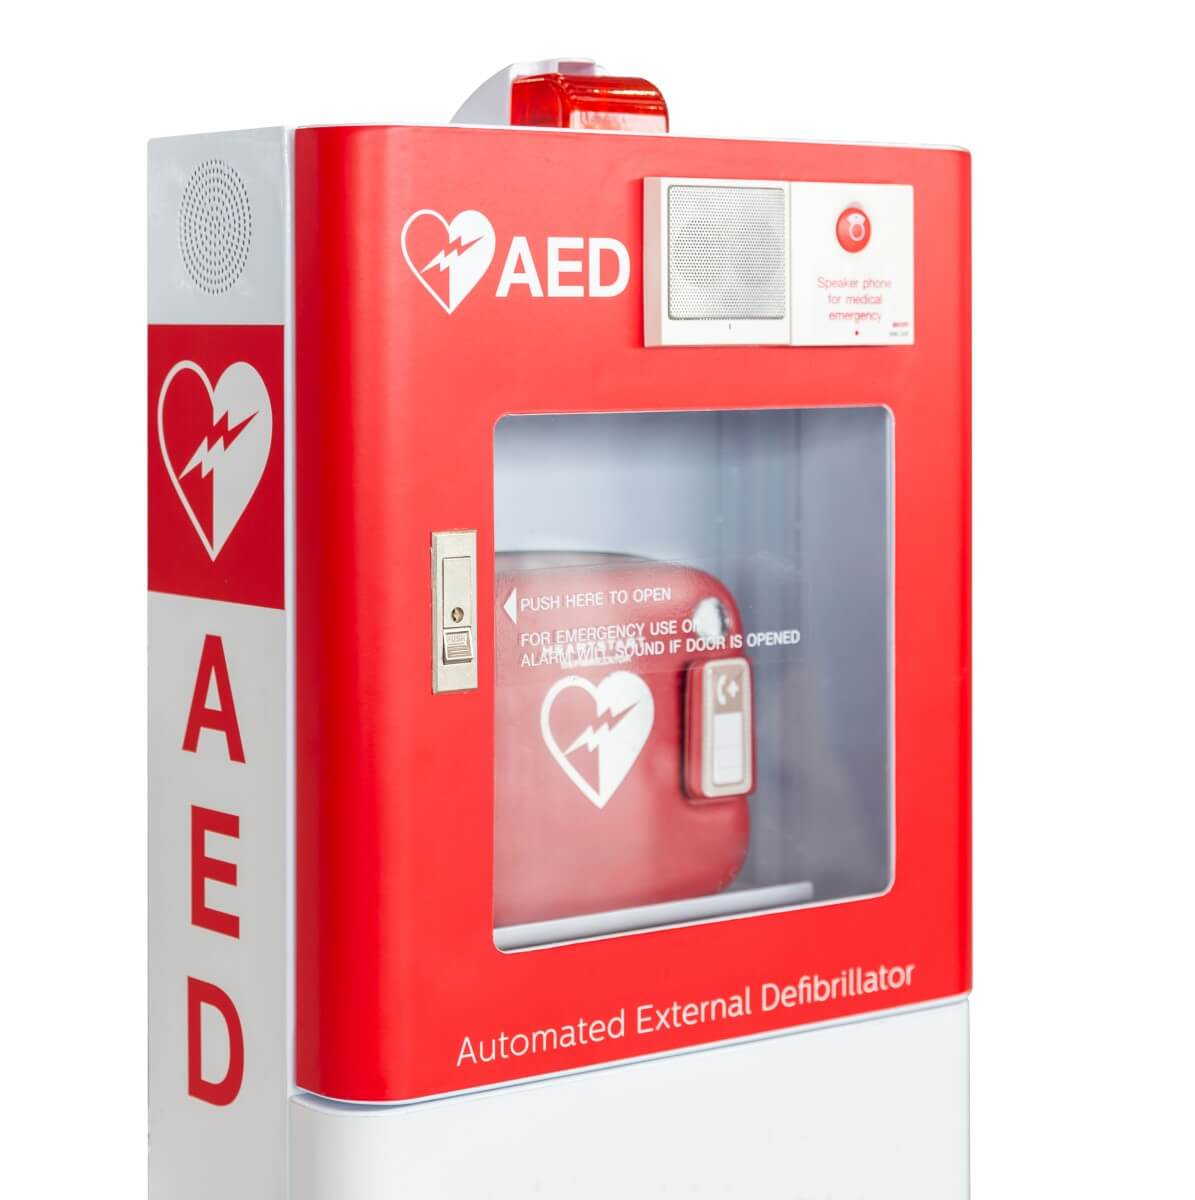 Ein rotes AED Gerät symbolisiert die Wichtigkeit eines AED Trainers